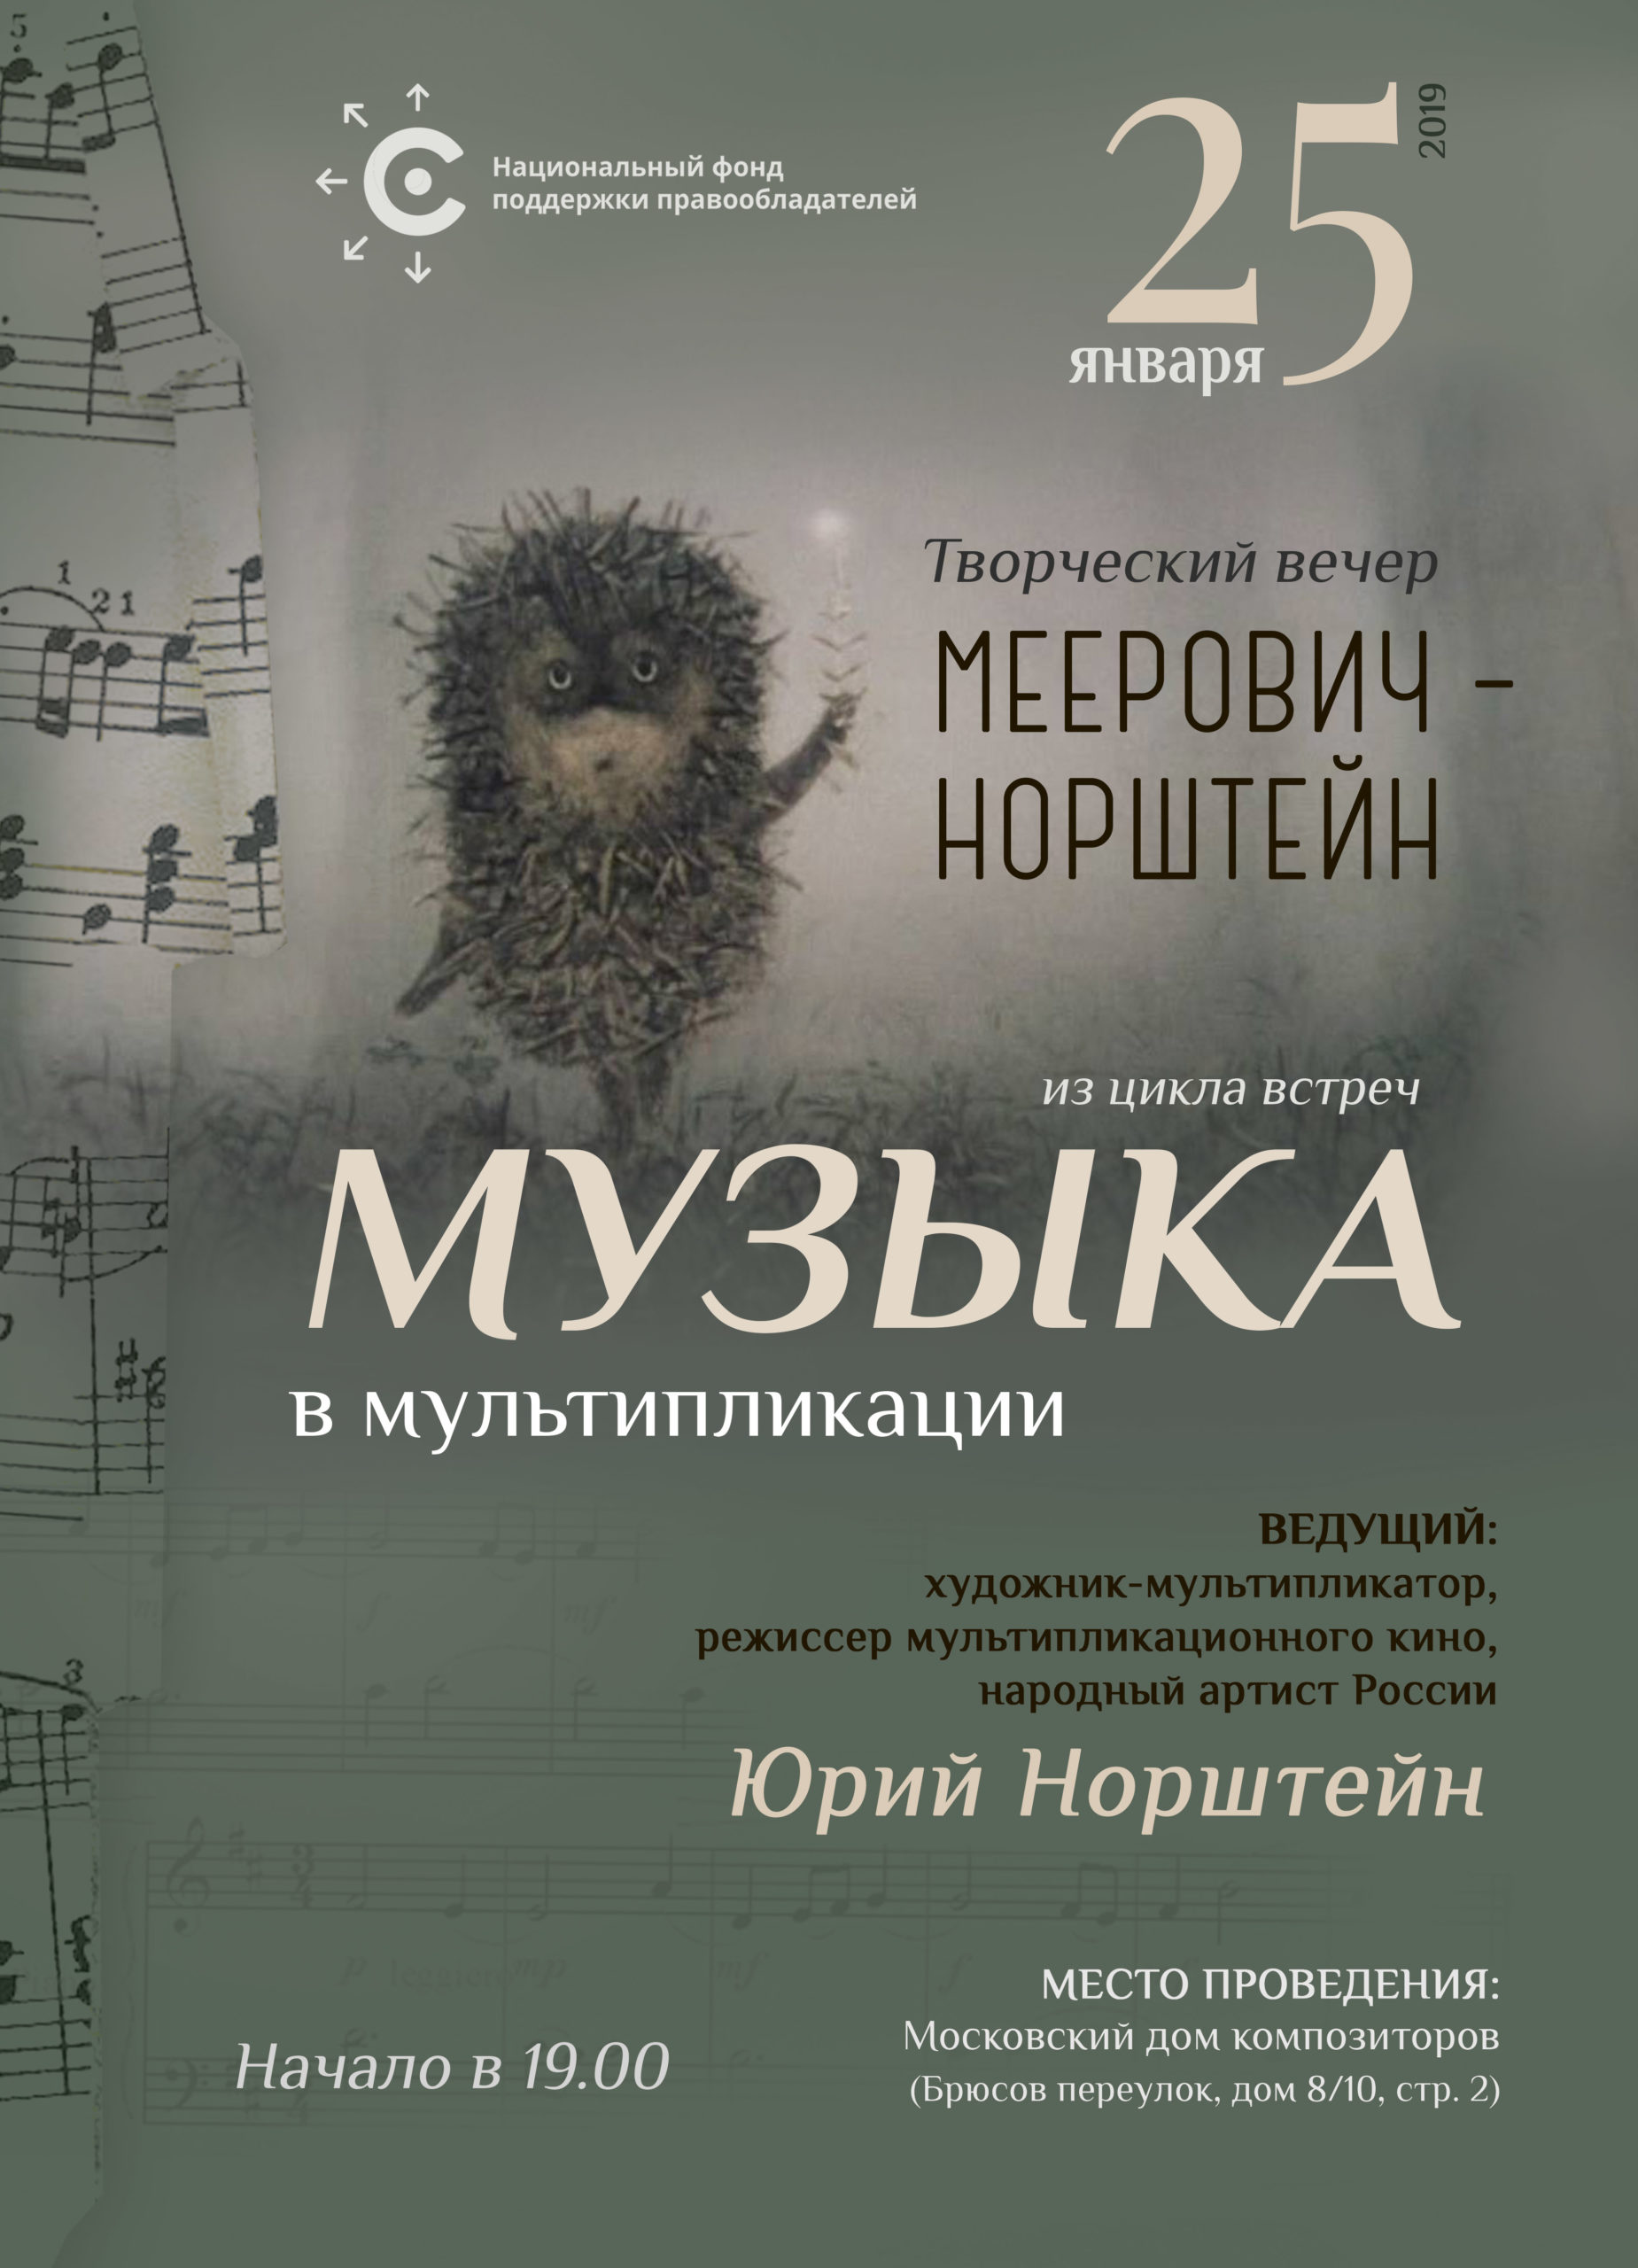 НФПП организует творческий вечер «Меерович – Норштейн» из цикла встреч «Музыка в мультипликации»